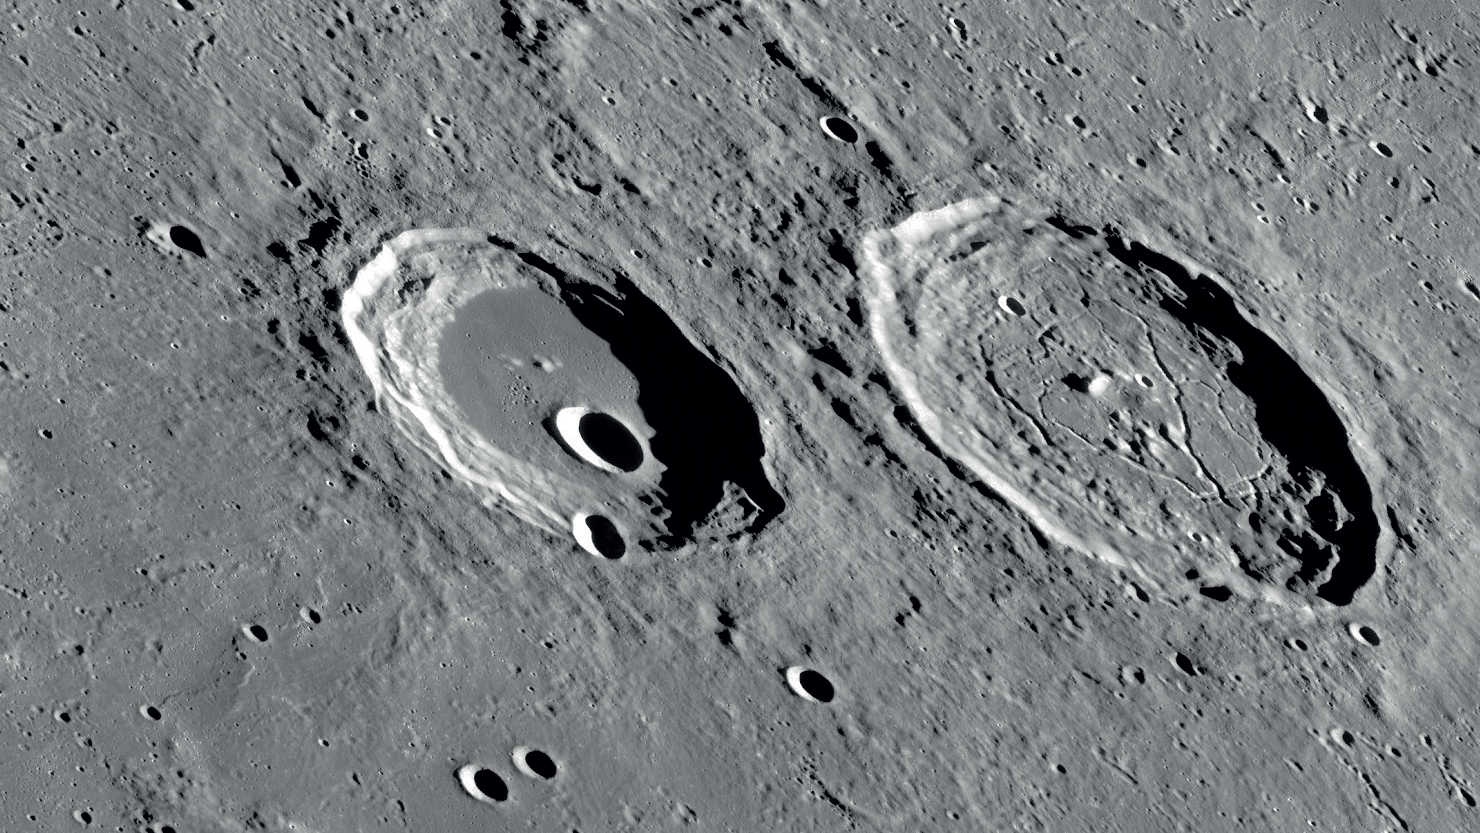 Oba kratery, Atlas i Herkules, bardzo się różnią zewnętrznie. NASA/GSFC/Arizona State University